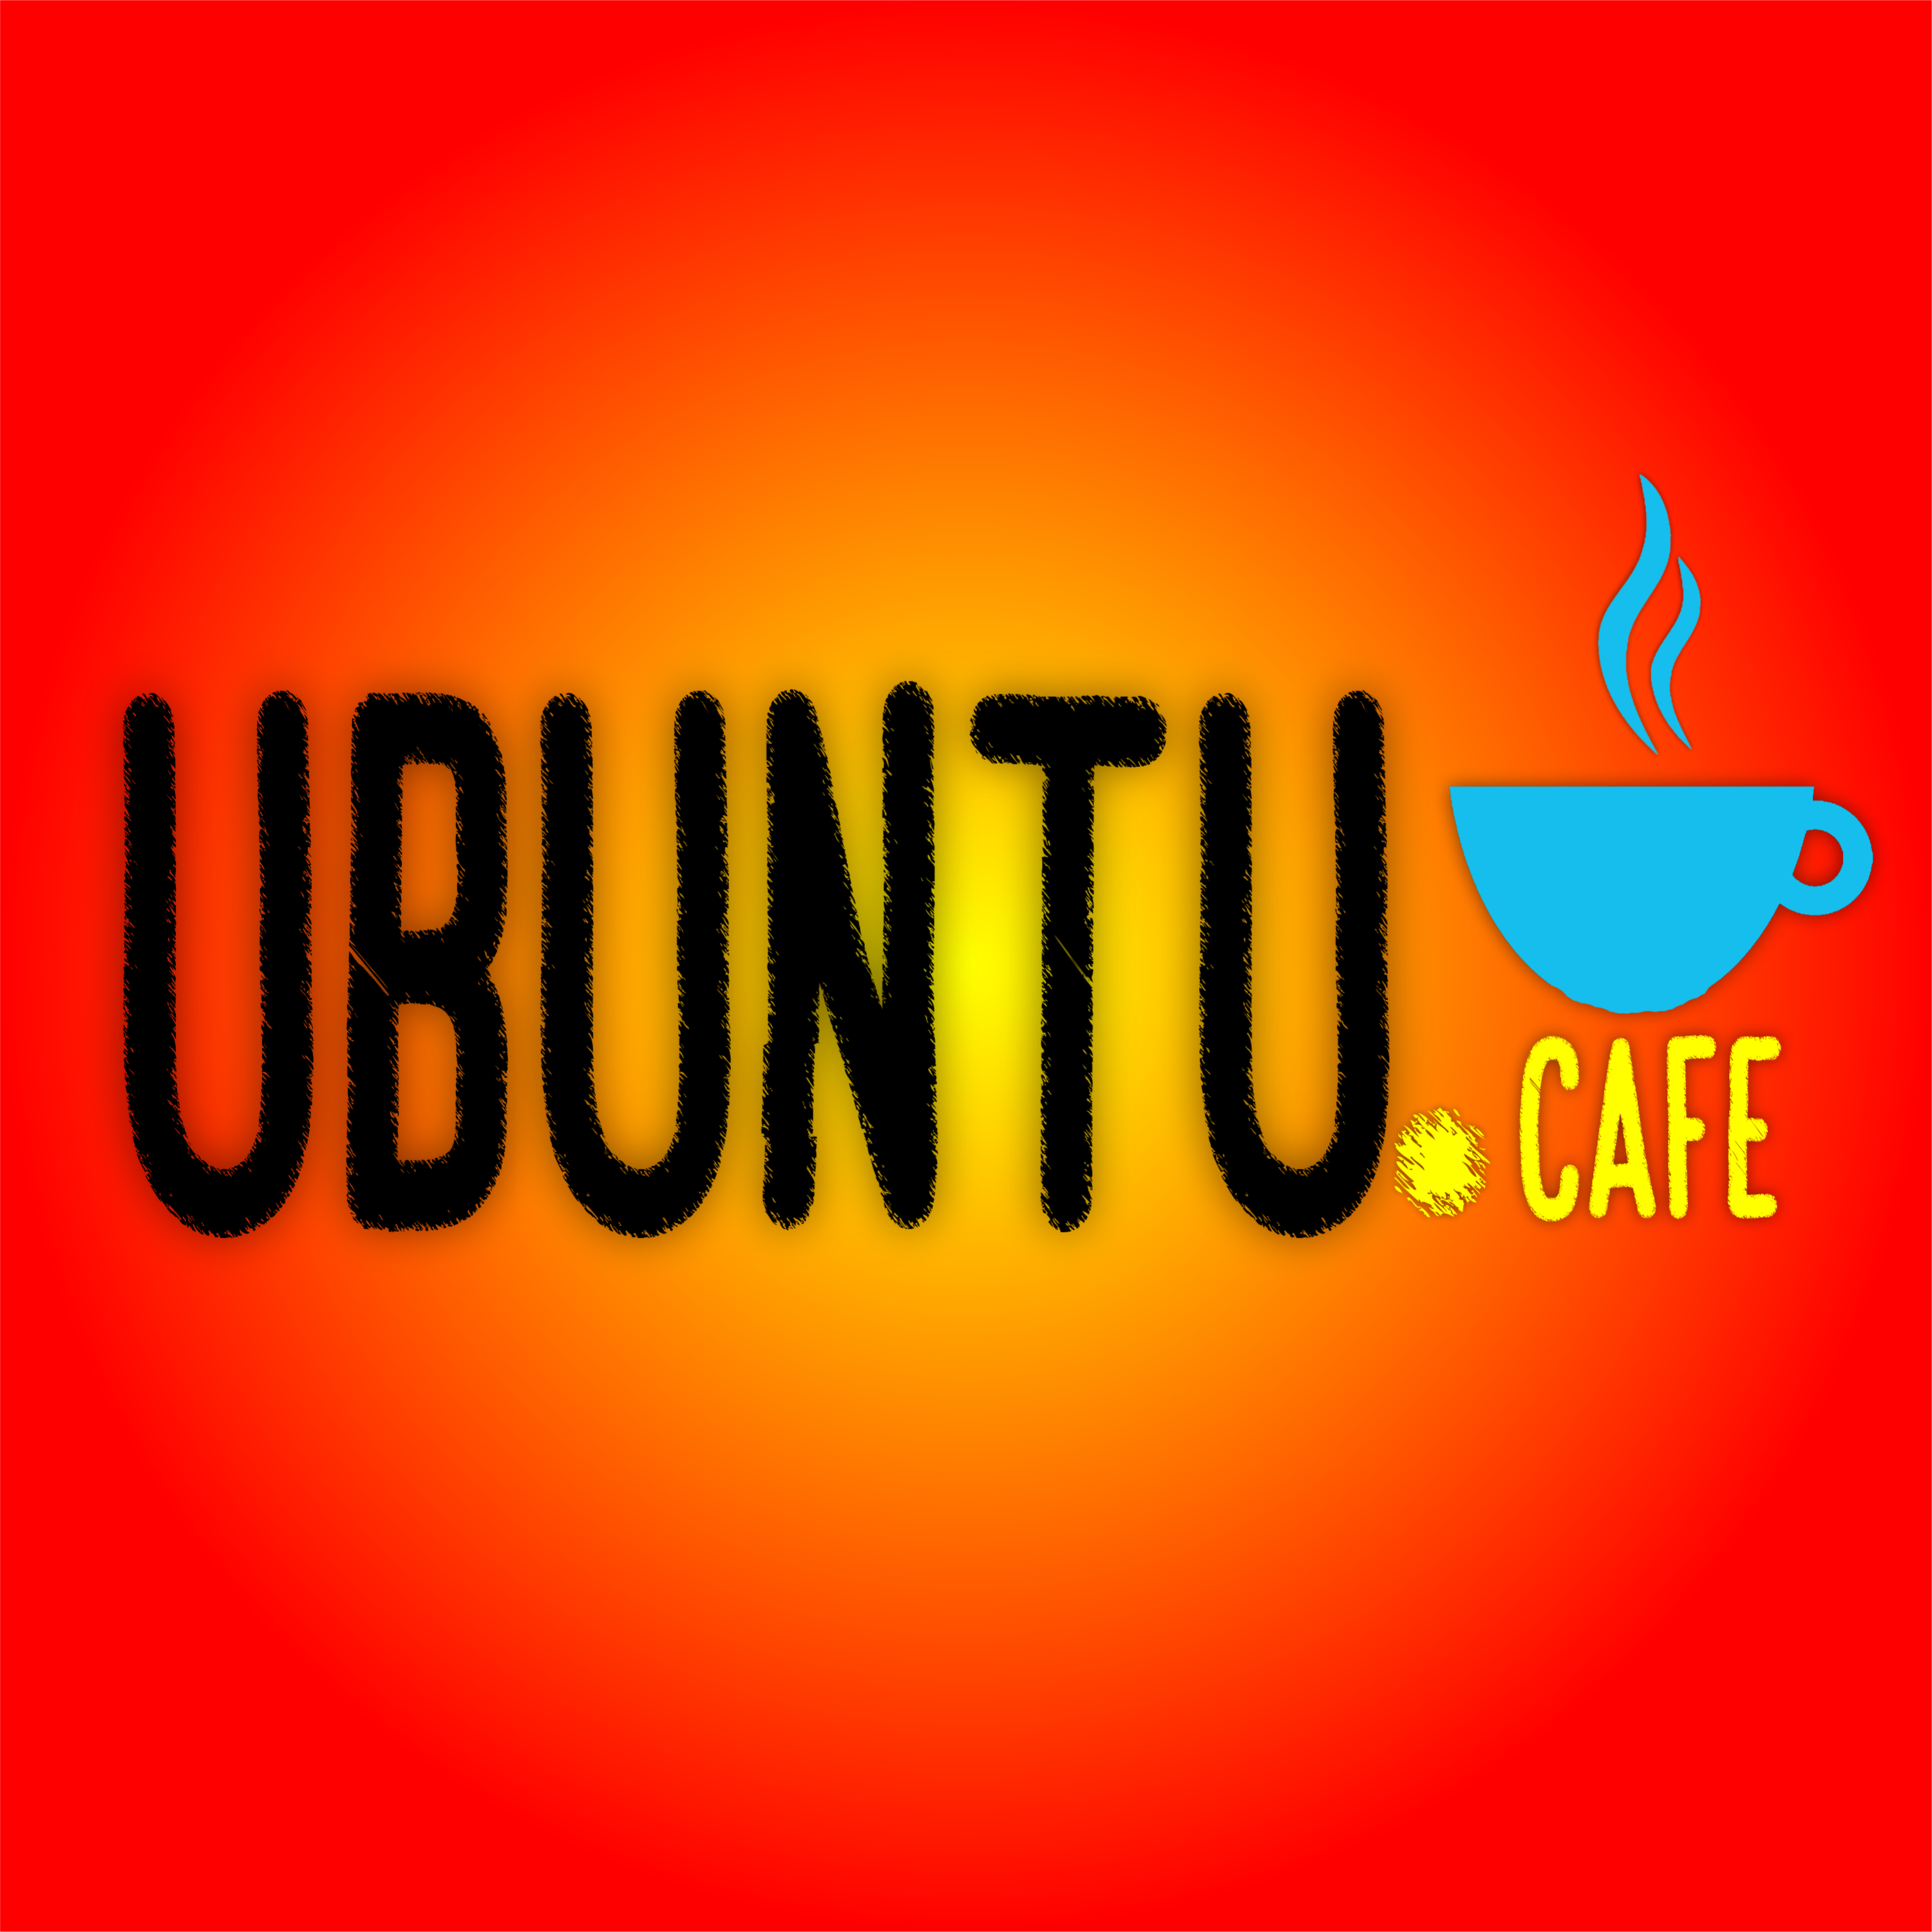 Ubuntu Cafe T3 C1 | Libro: El Bolero en America Latina